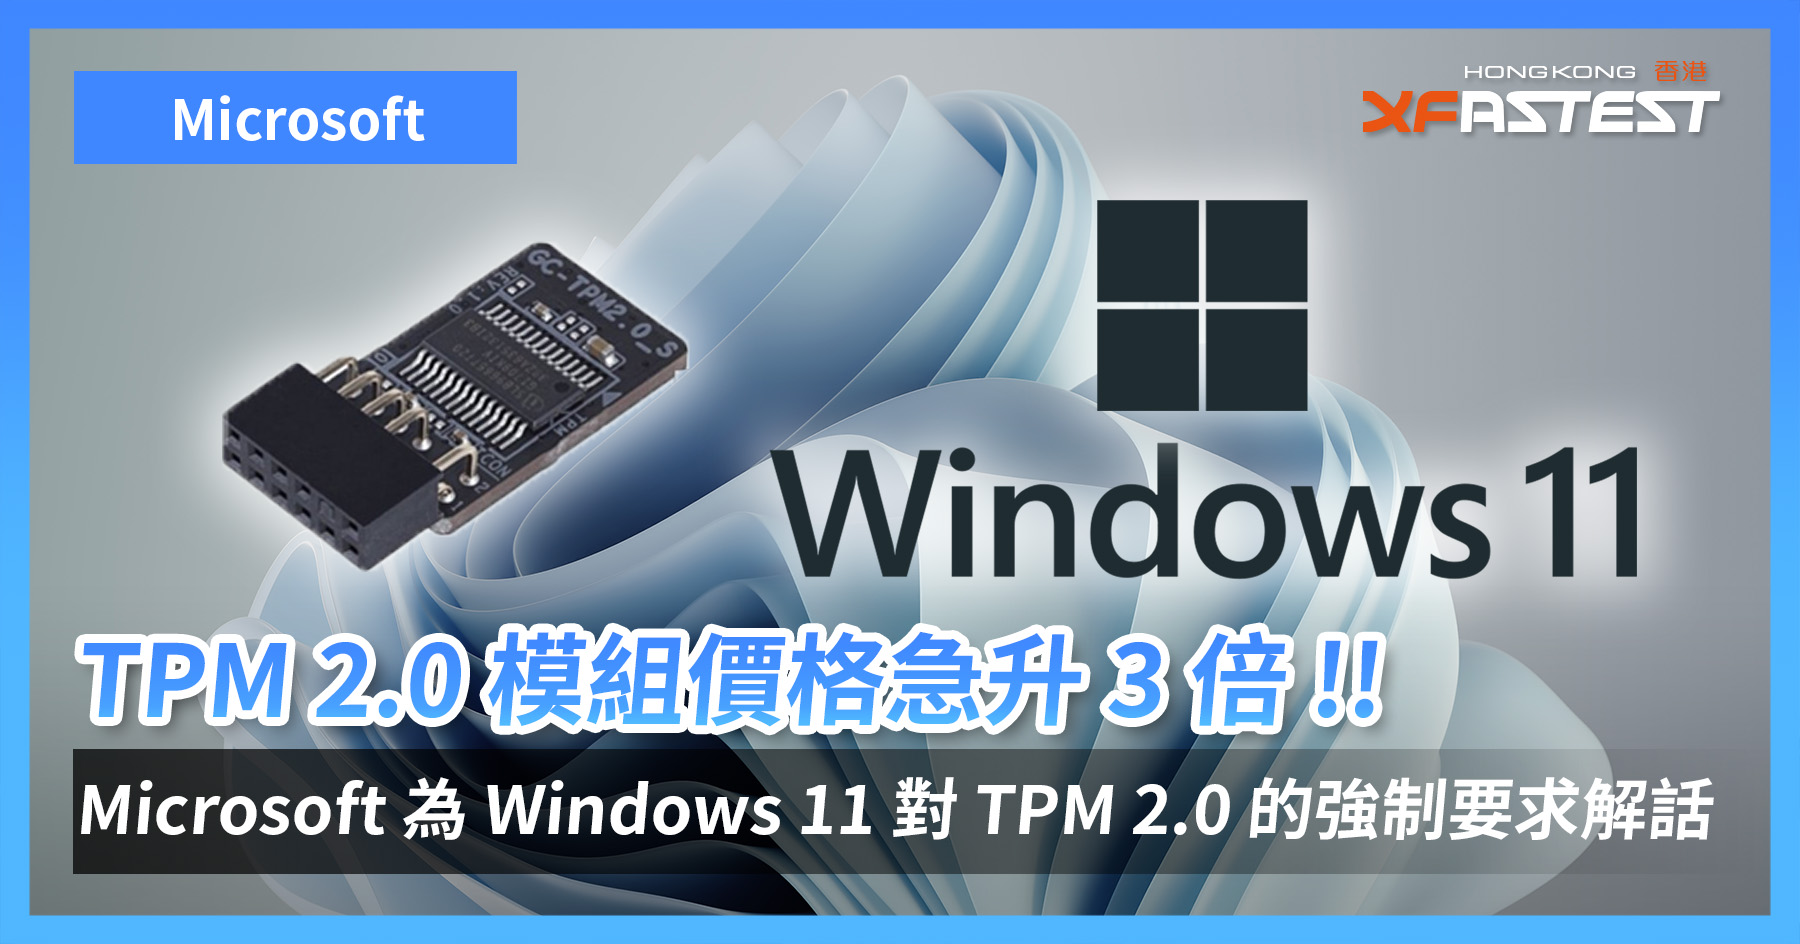 Tpm 2.0 windows 11